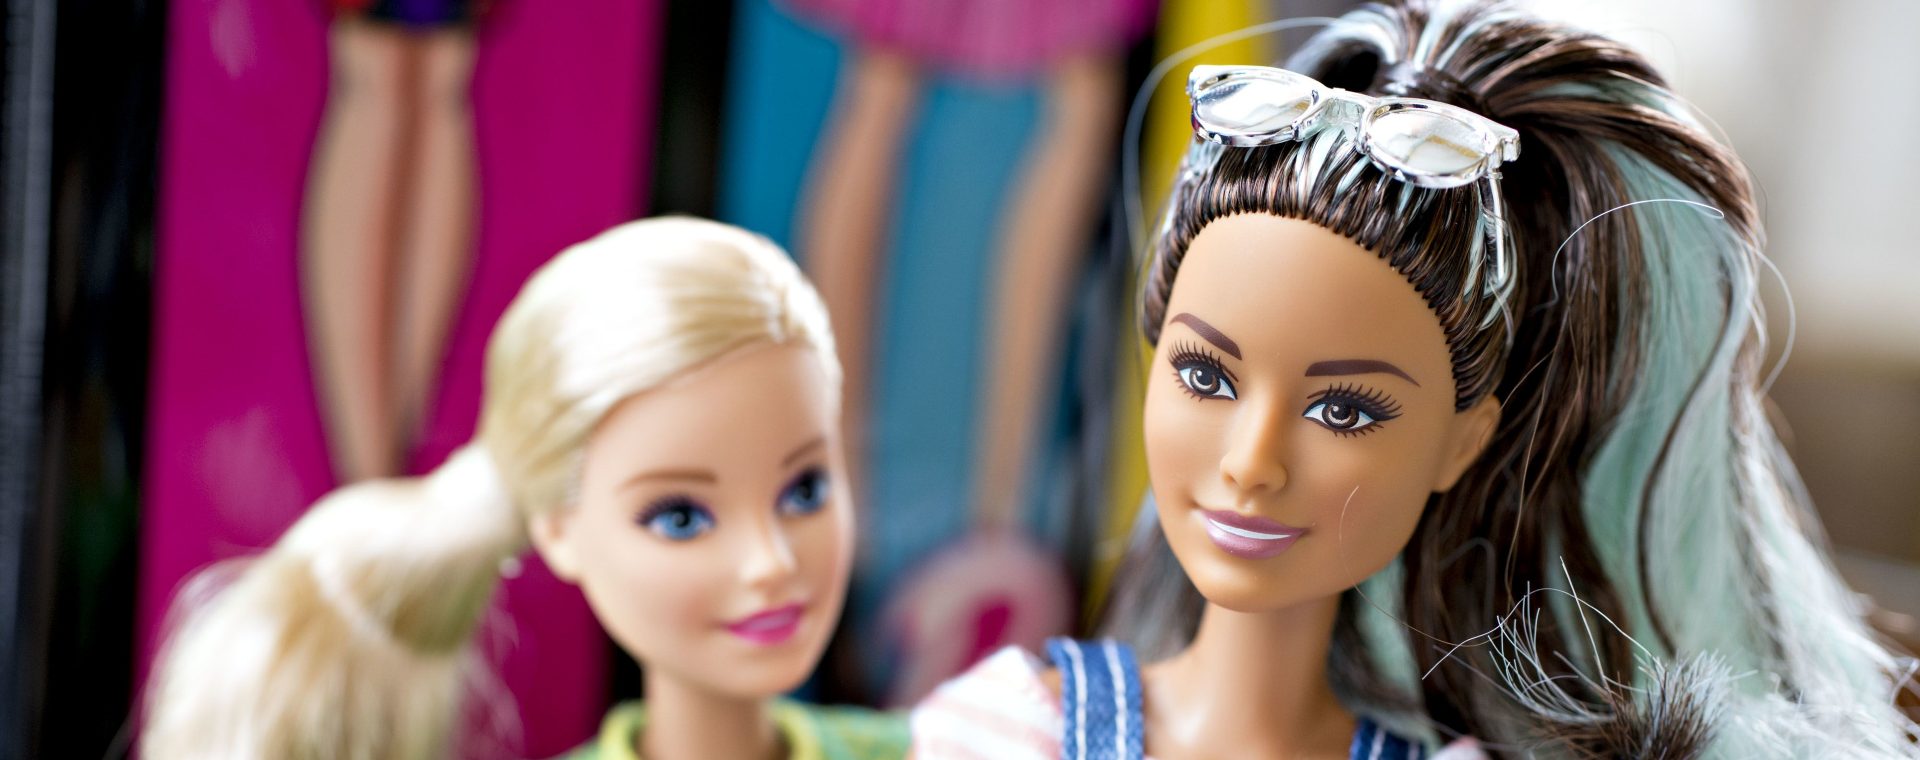 Boneka Barbie milik Mattel Inc. dipamerkan di Tiskilwa, Illinois, AS, Senin, (16/4/2018).  Bloomberg - Daniel Acker